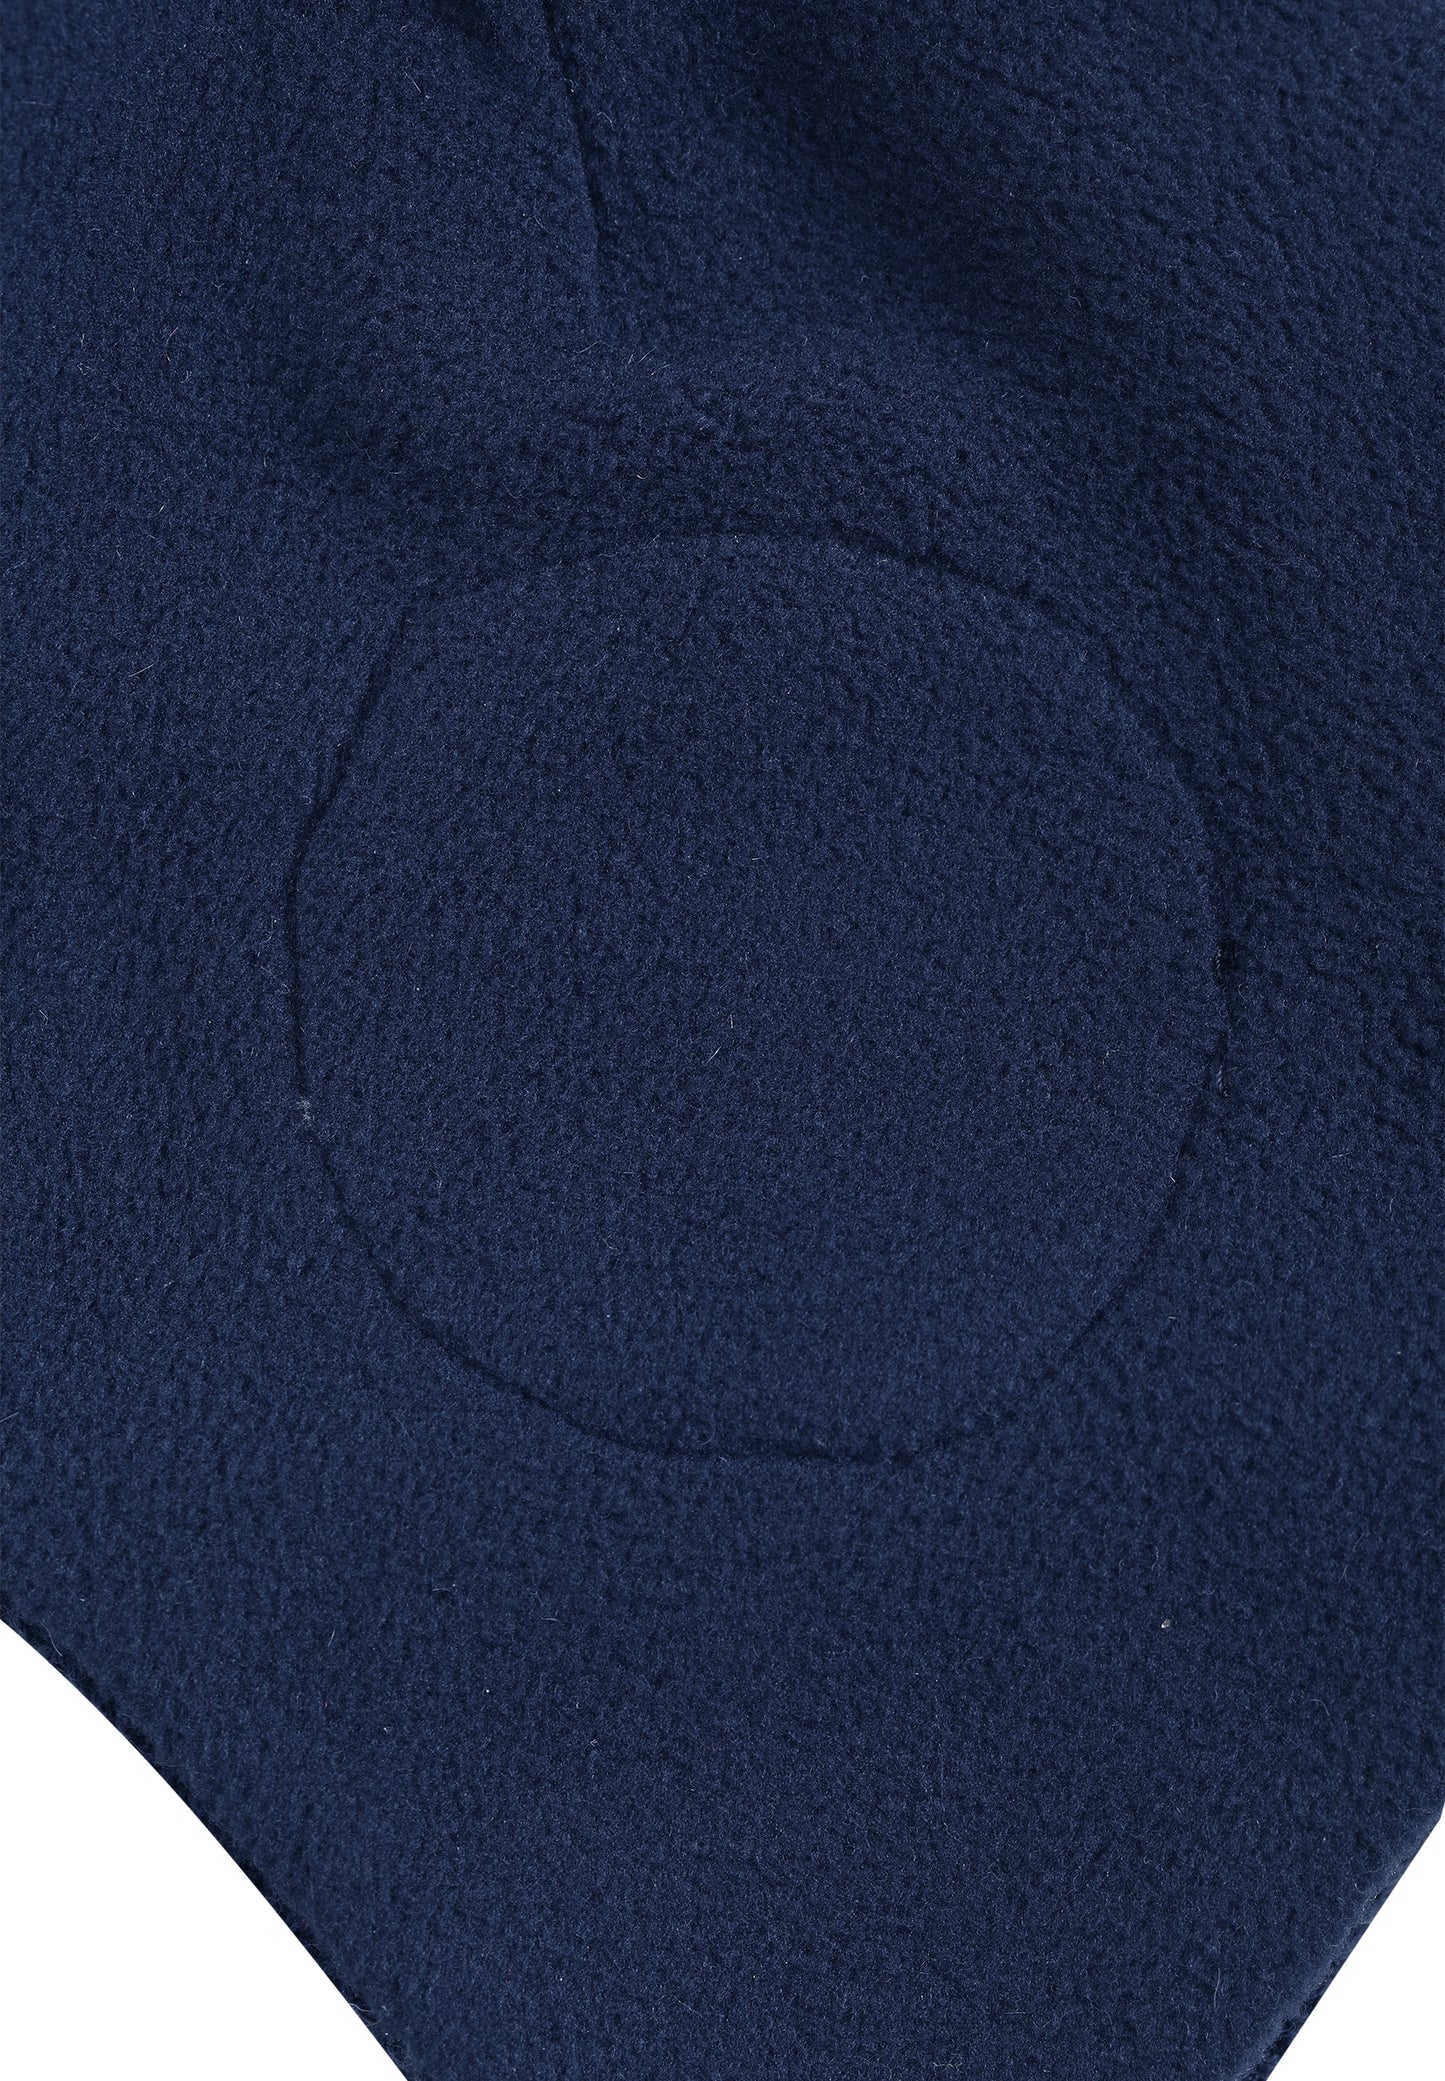 Reima Mütze mit Bändel <br>Auva/Hopea <br>Gr. 46, 48<br>innen hautfreundliches Fleece<br> aussen warme, wasserabweisende Merino-Wolle<br>Windstopper-Membrane im Ohrbereich<br> KEIN UMTAUSCH